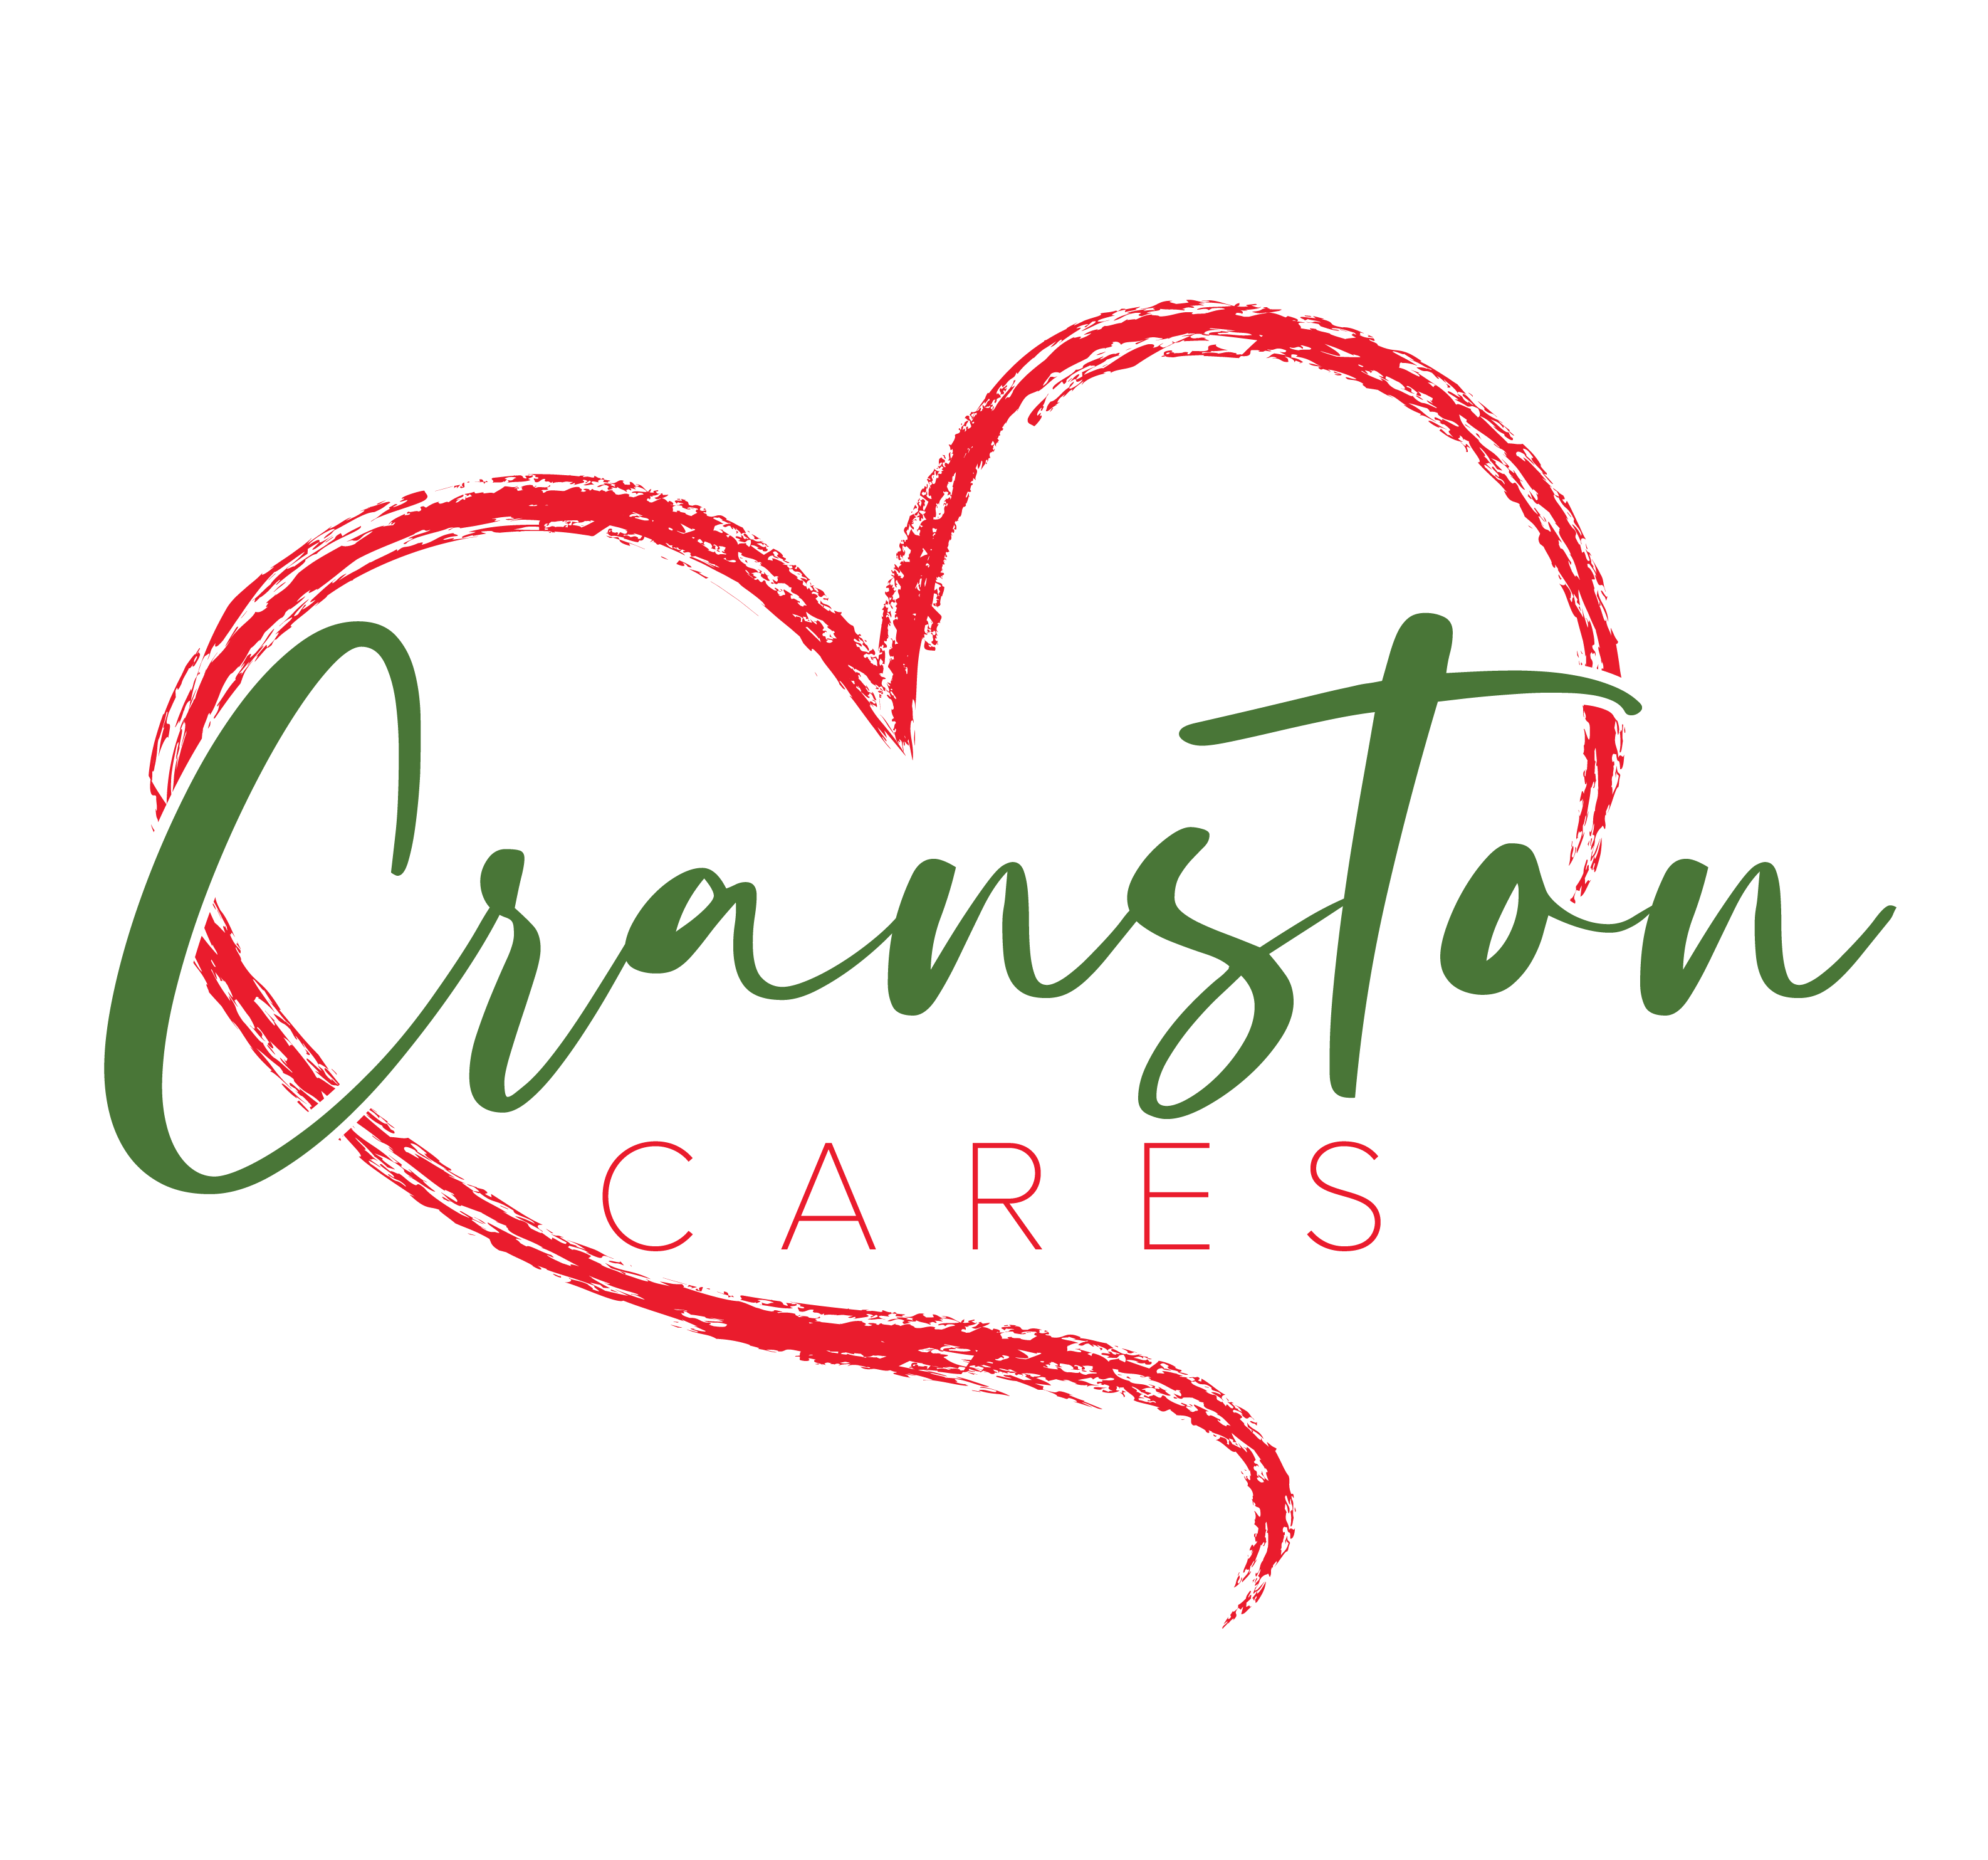 Cranston Cares